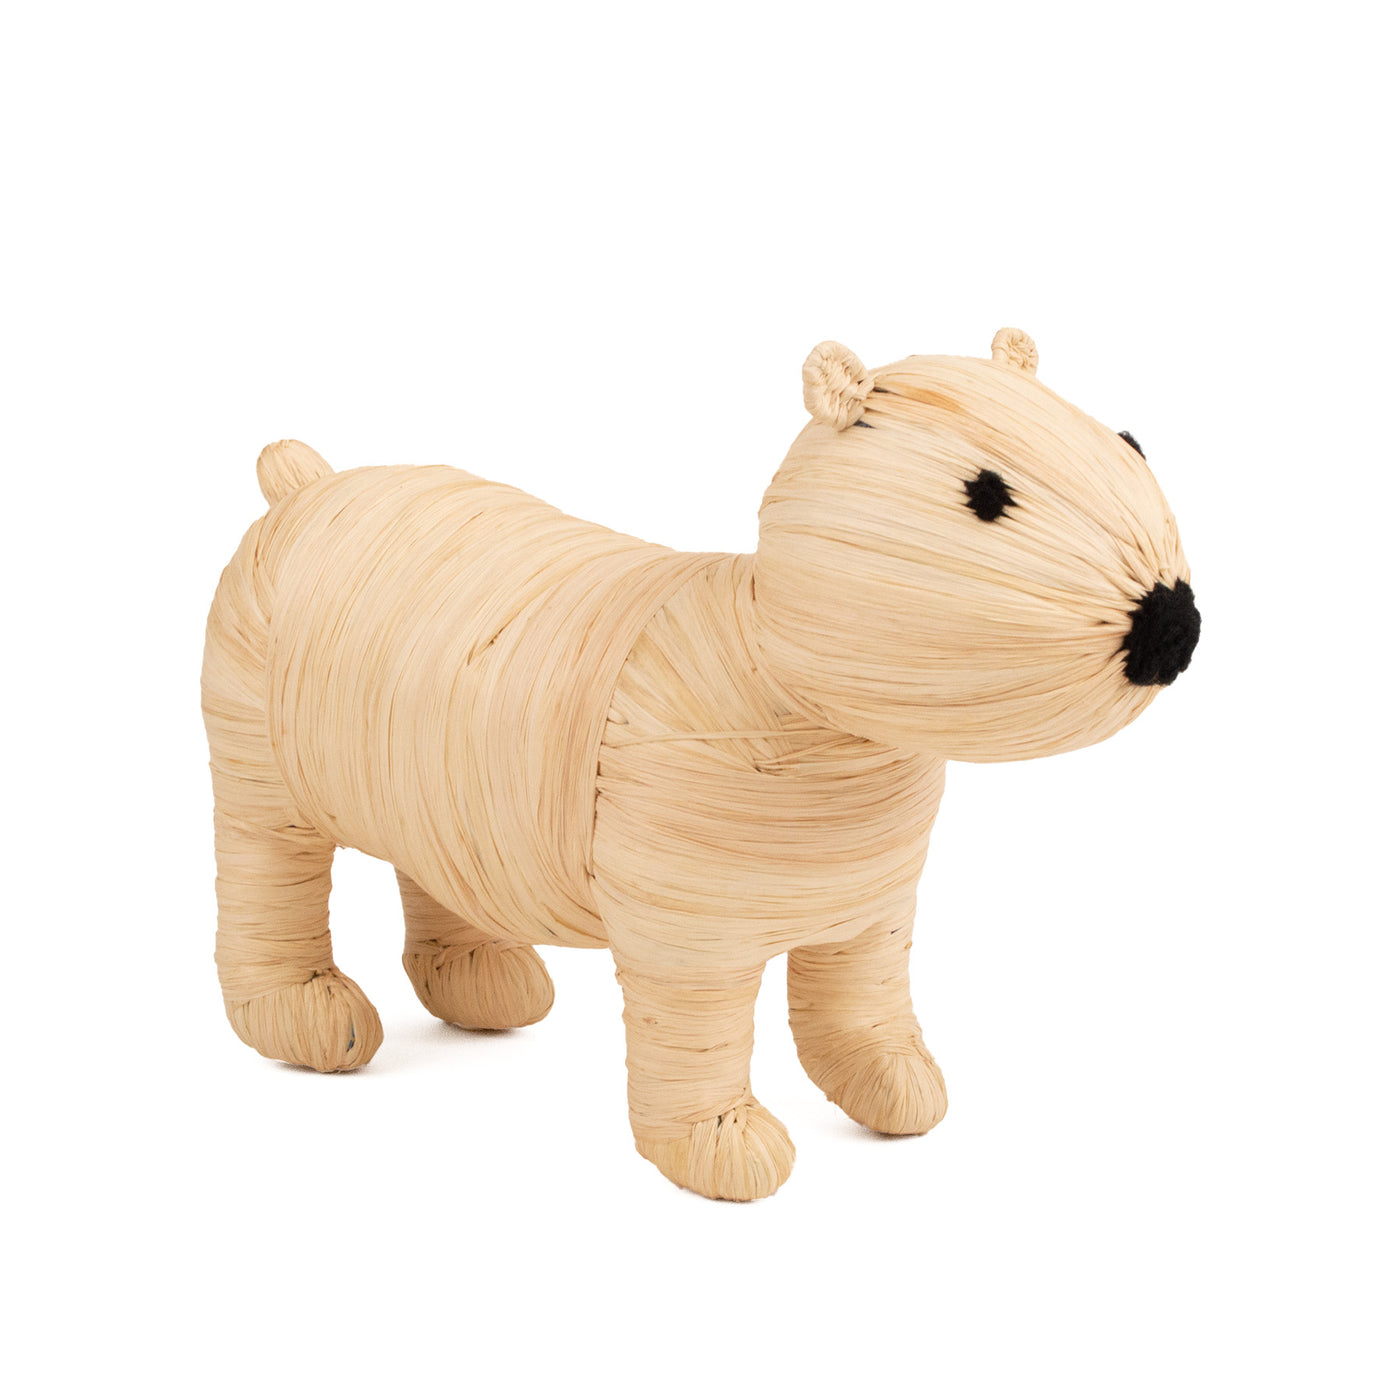 Holiday Figurine - 7" Polar Bear